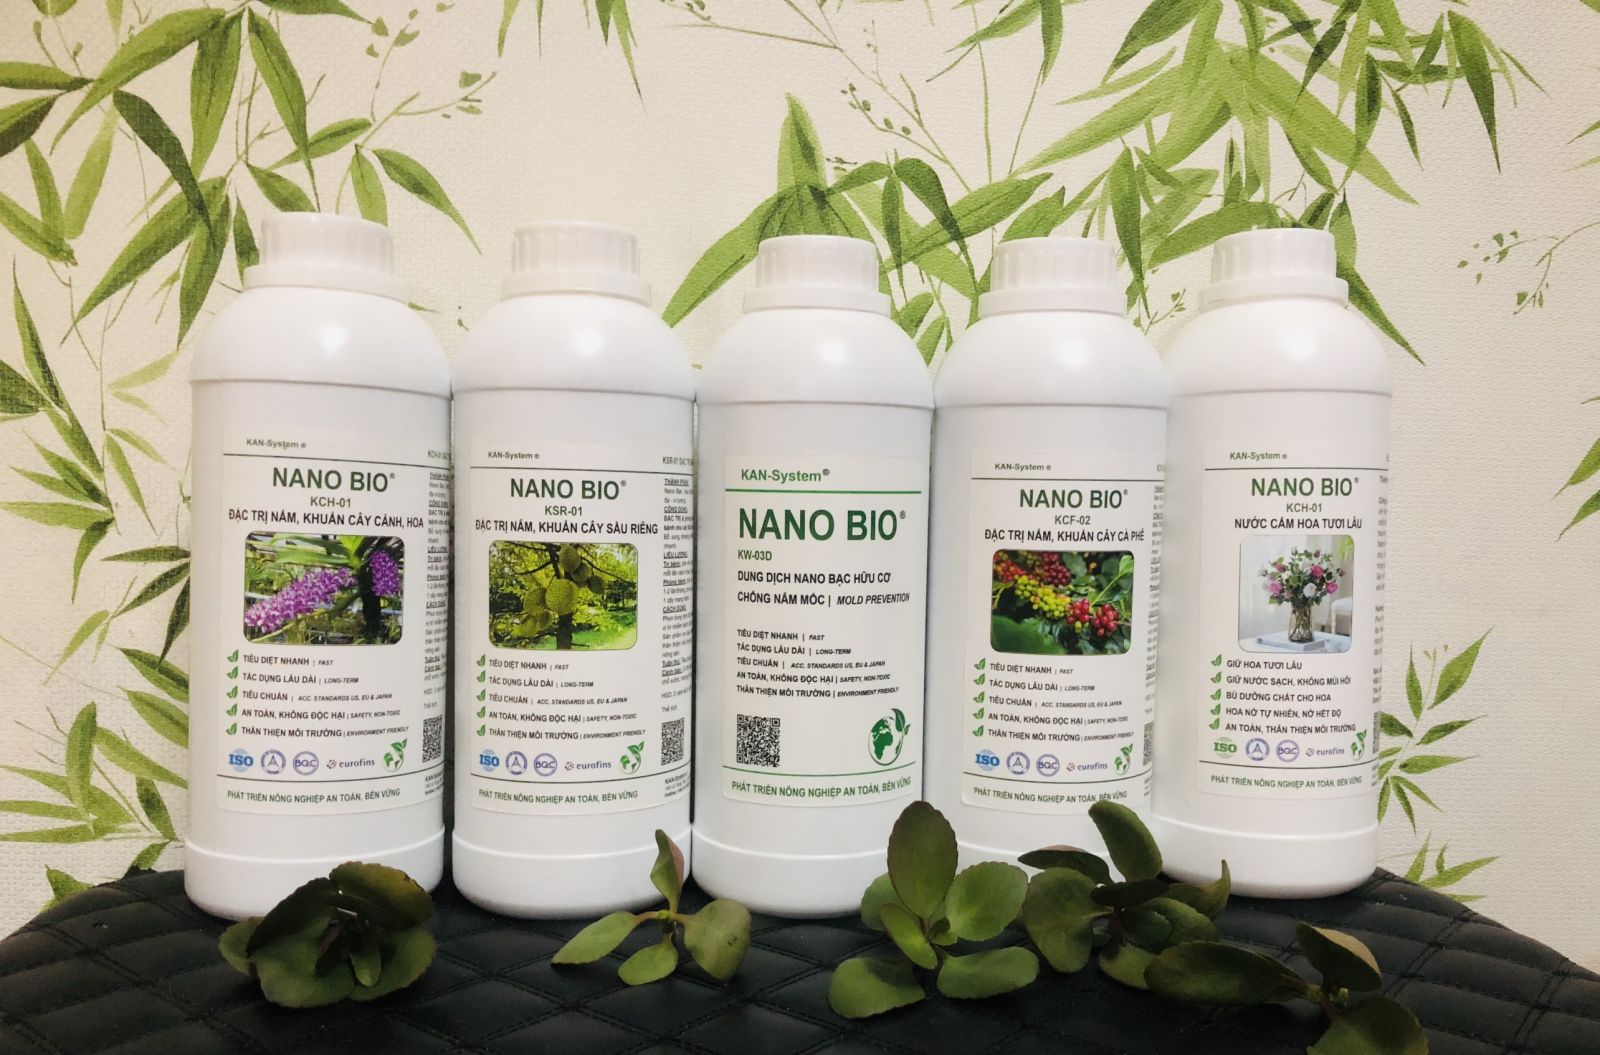 NANO BIO: ĐẶC TRỊ, phòng chống bệnh do nấm, vi khuẩn gây bệnh cho cây Ca Cao